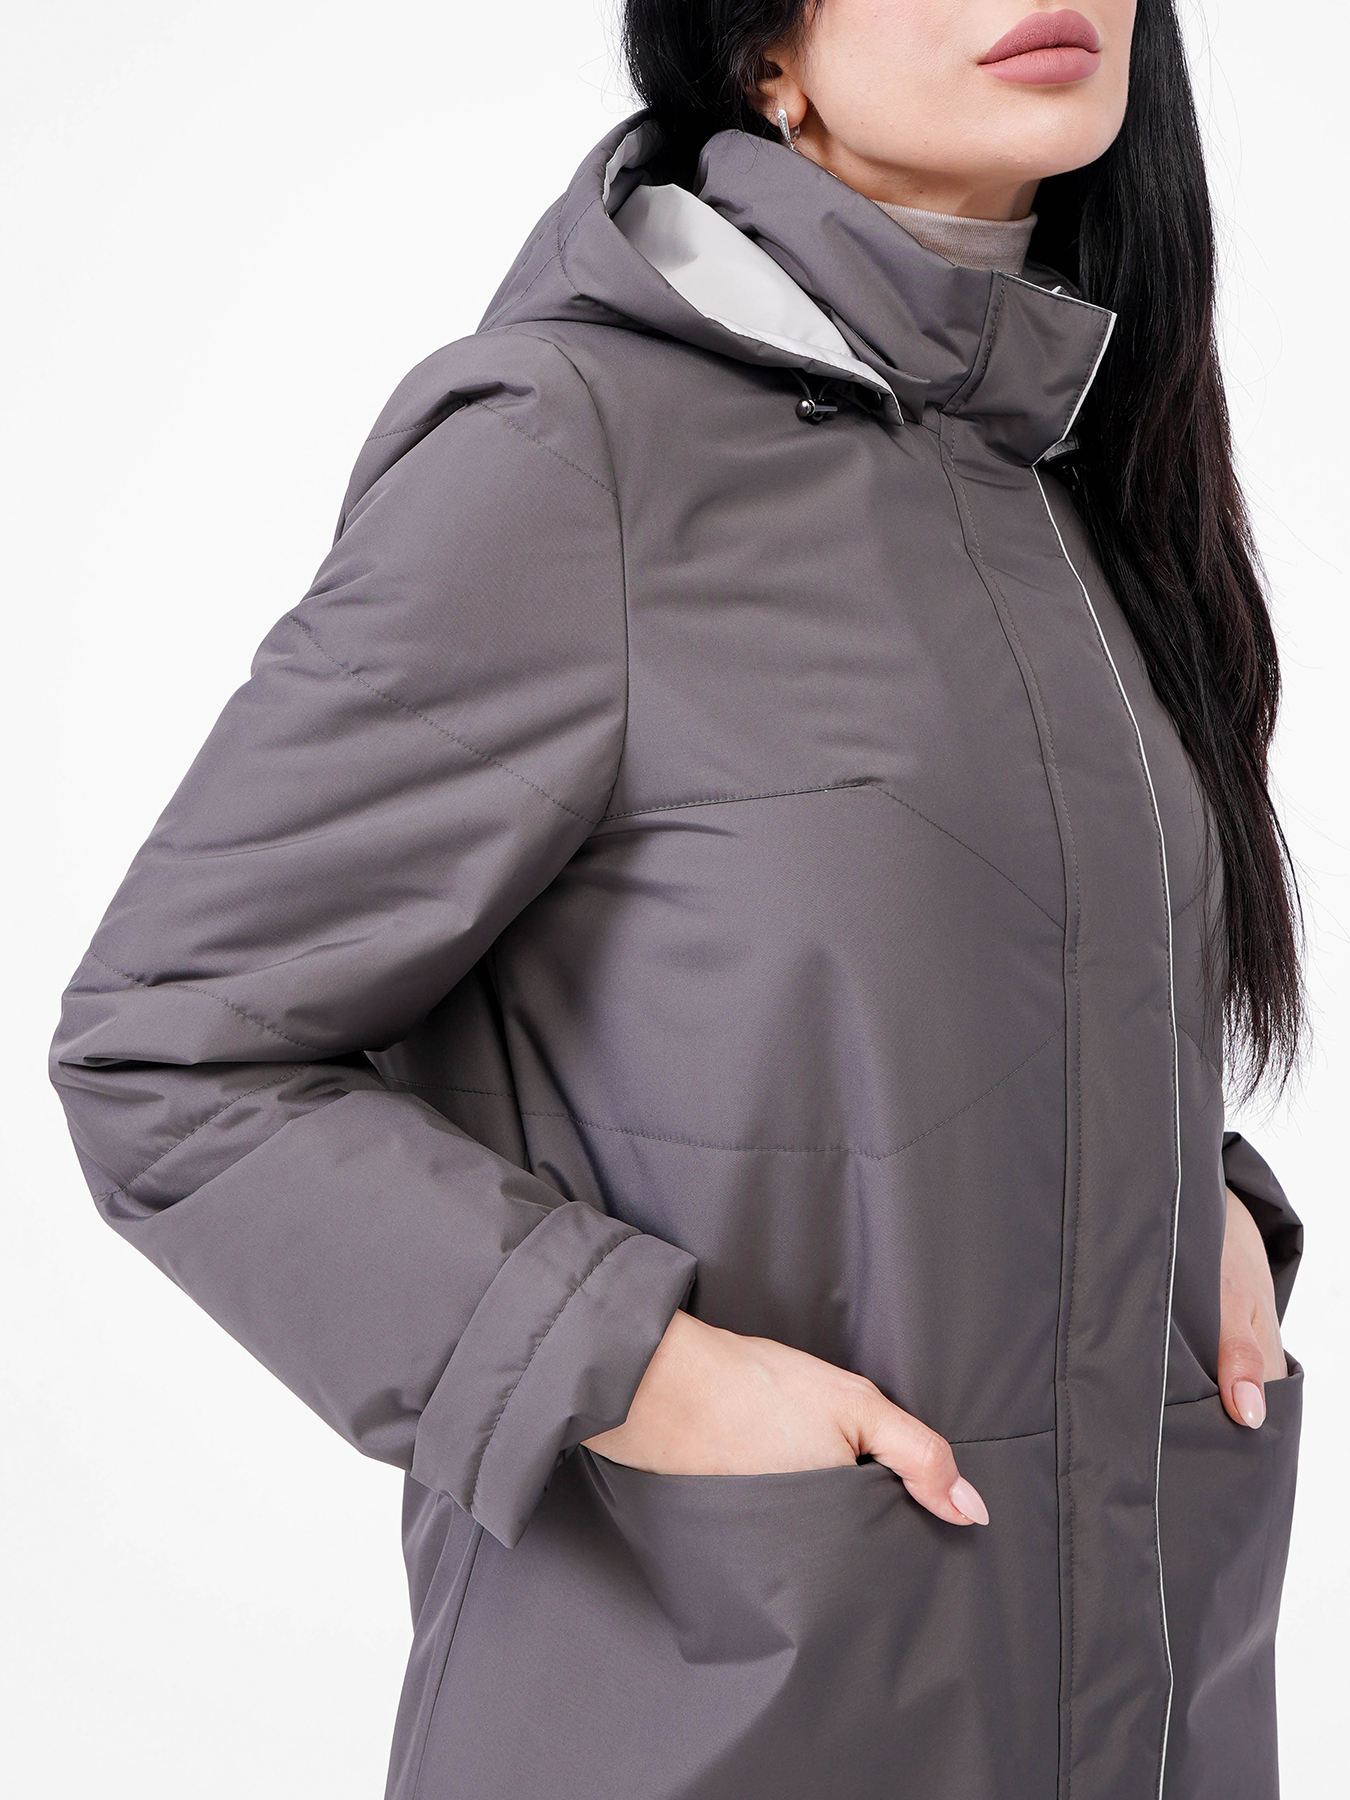 Пальто Maritta 418373-020, цвет темно-серый, размер 44 - фото 2